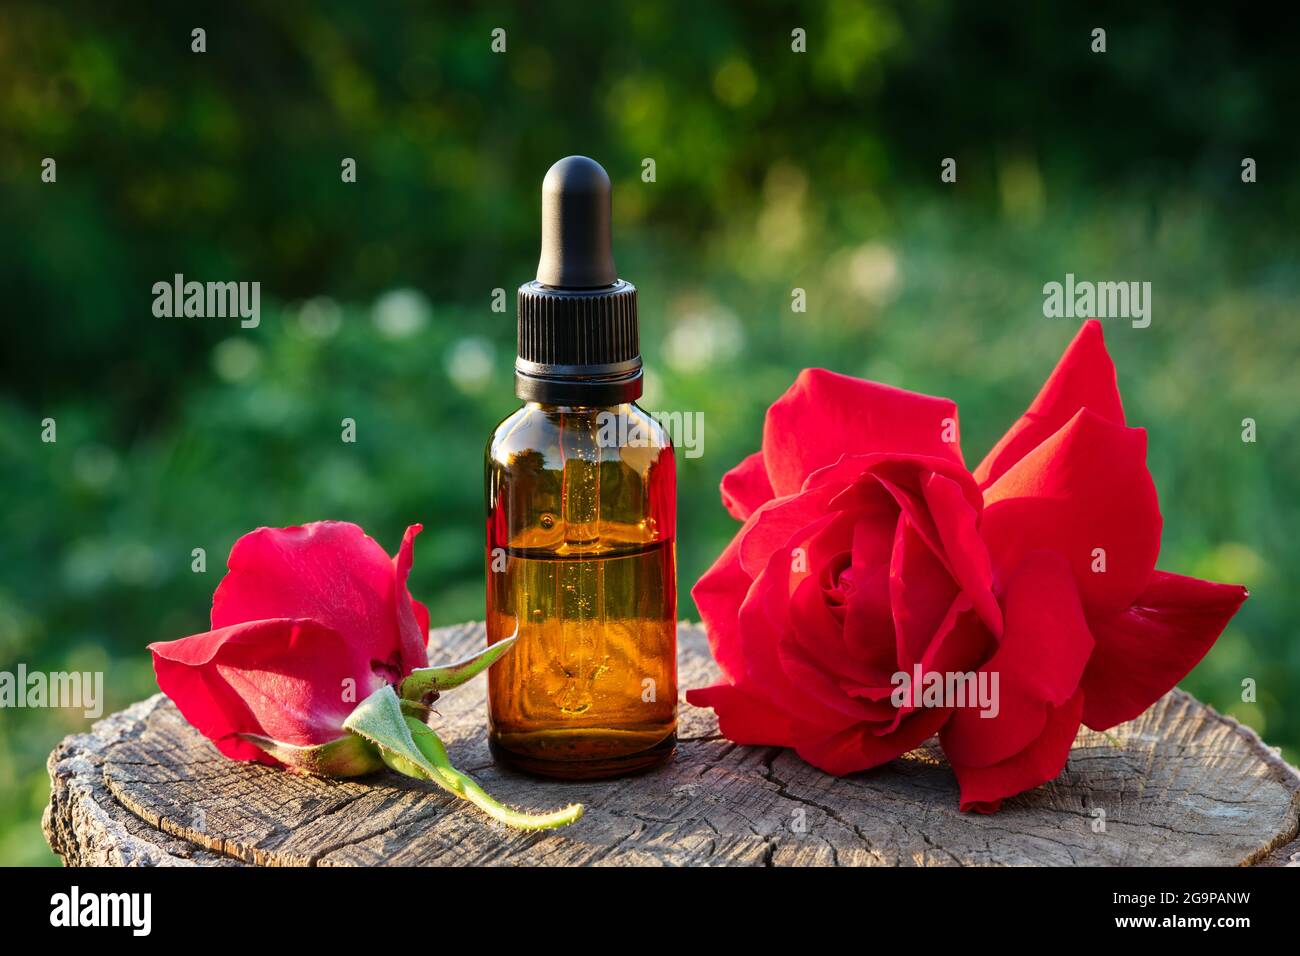 Flasche mit ätherischem Rosenöl oder aromatisiertem Wasser. Rote Rosenblüten. Stockfoto